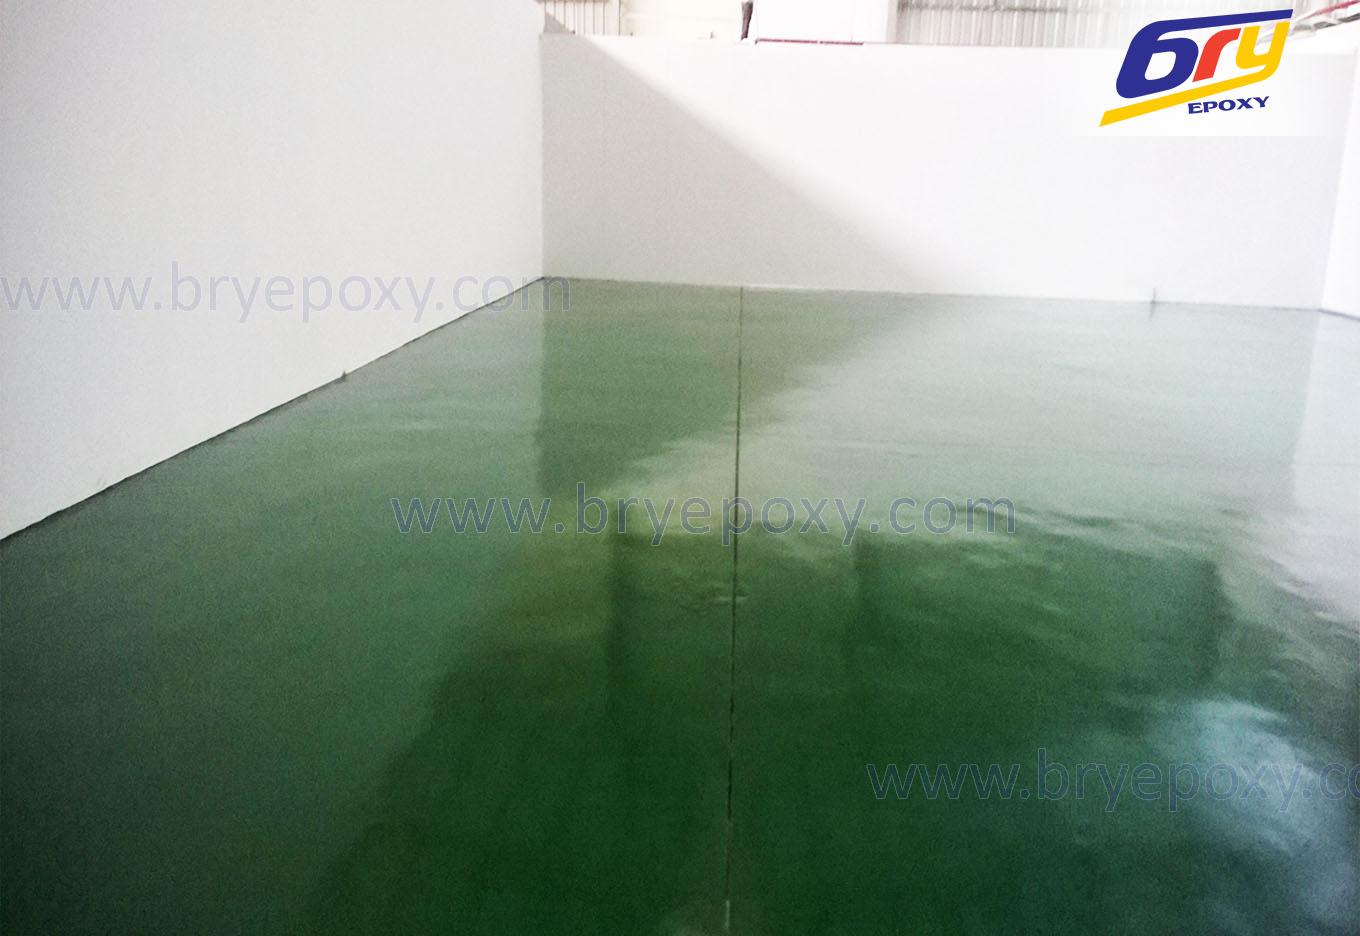 Thi công sơn sàn epoxy nhà máy thực phẩm tại Từ Sơn-Bắc Ninh